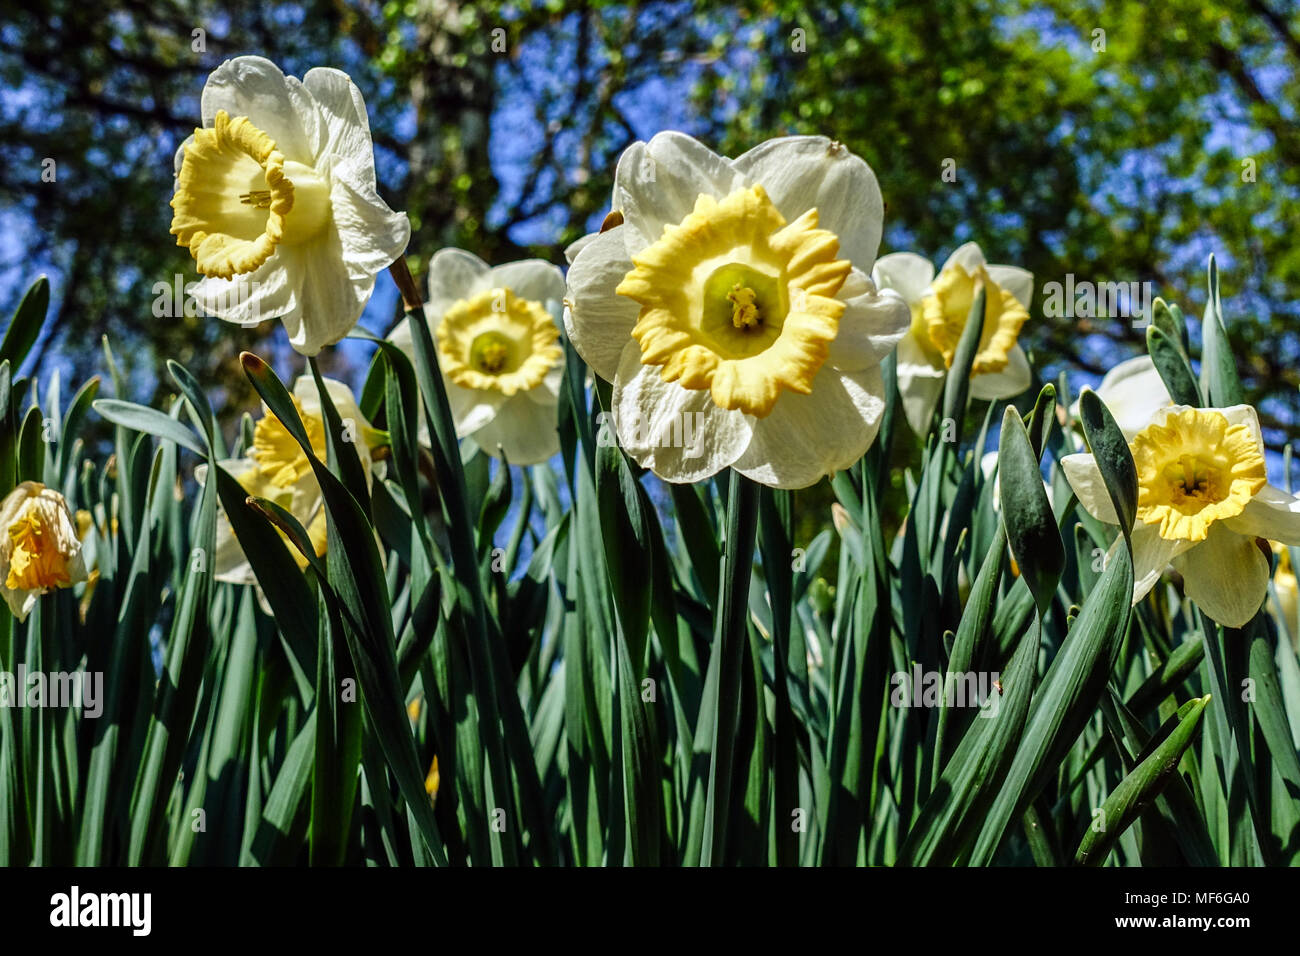 Jonquilles fleurs dans le jardin de printemps fleurs Narcisse Musca, Daffodil floraison Banque D'Images